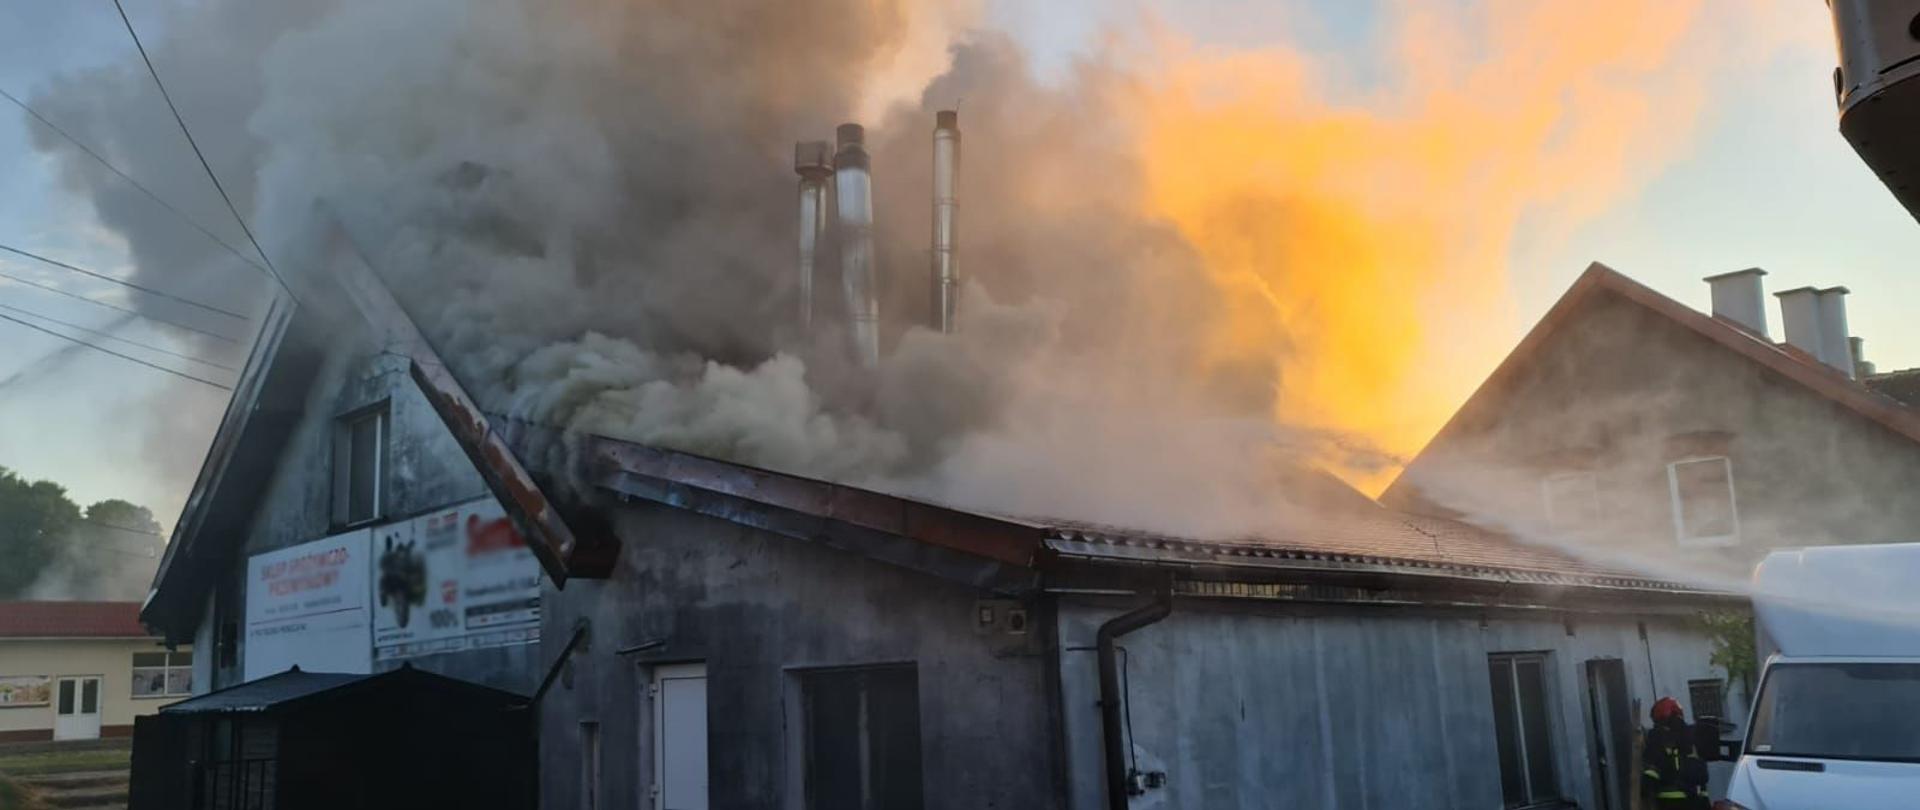 Budynek piekarni w centralnej części zdjęcia, z widocznymi kłębami dymu wydostającymi się z całej powierzchni poddasza.